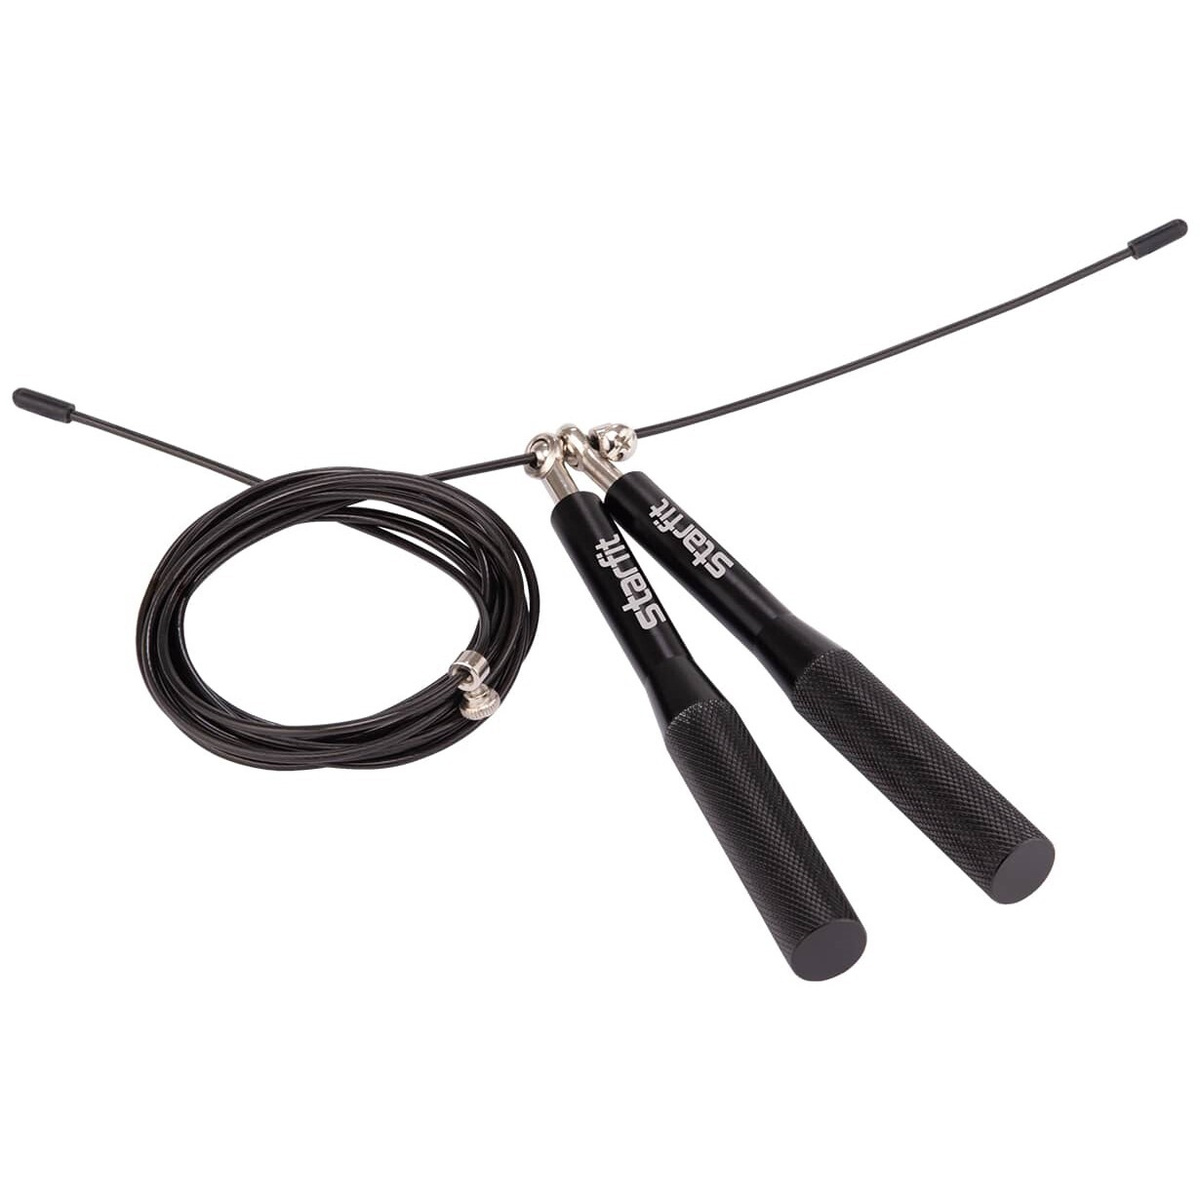 Скакалка STARFIT RP-301 скоростная с металлическими ручками, черный - Код товара: 194572729